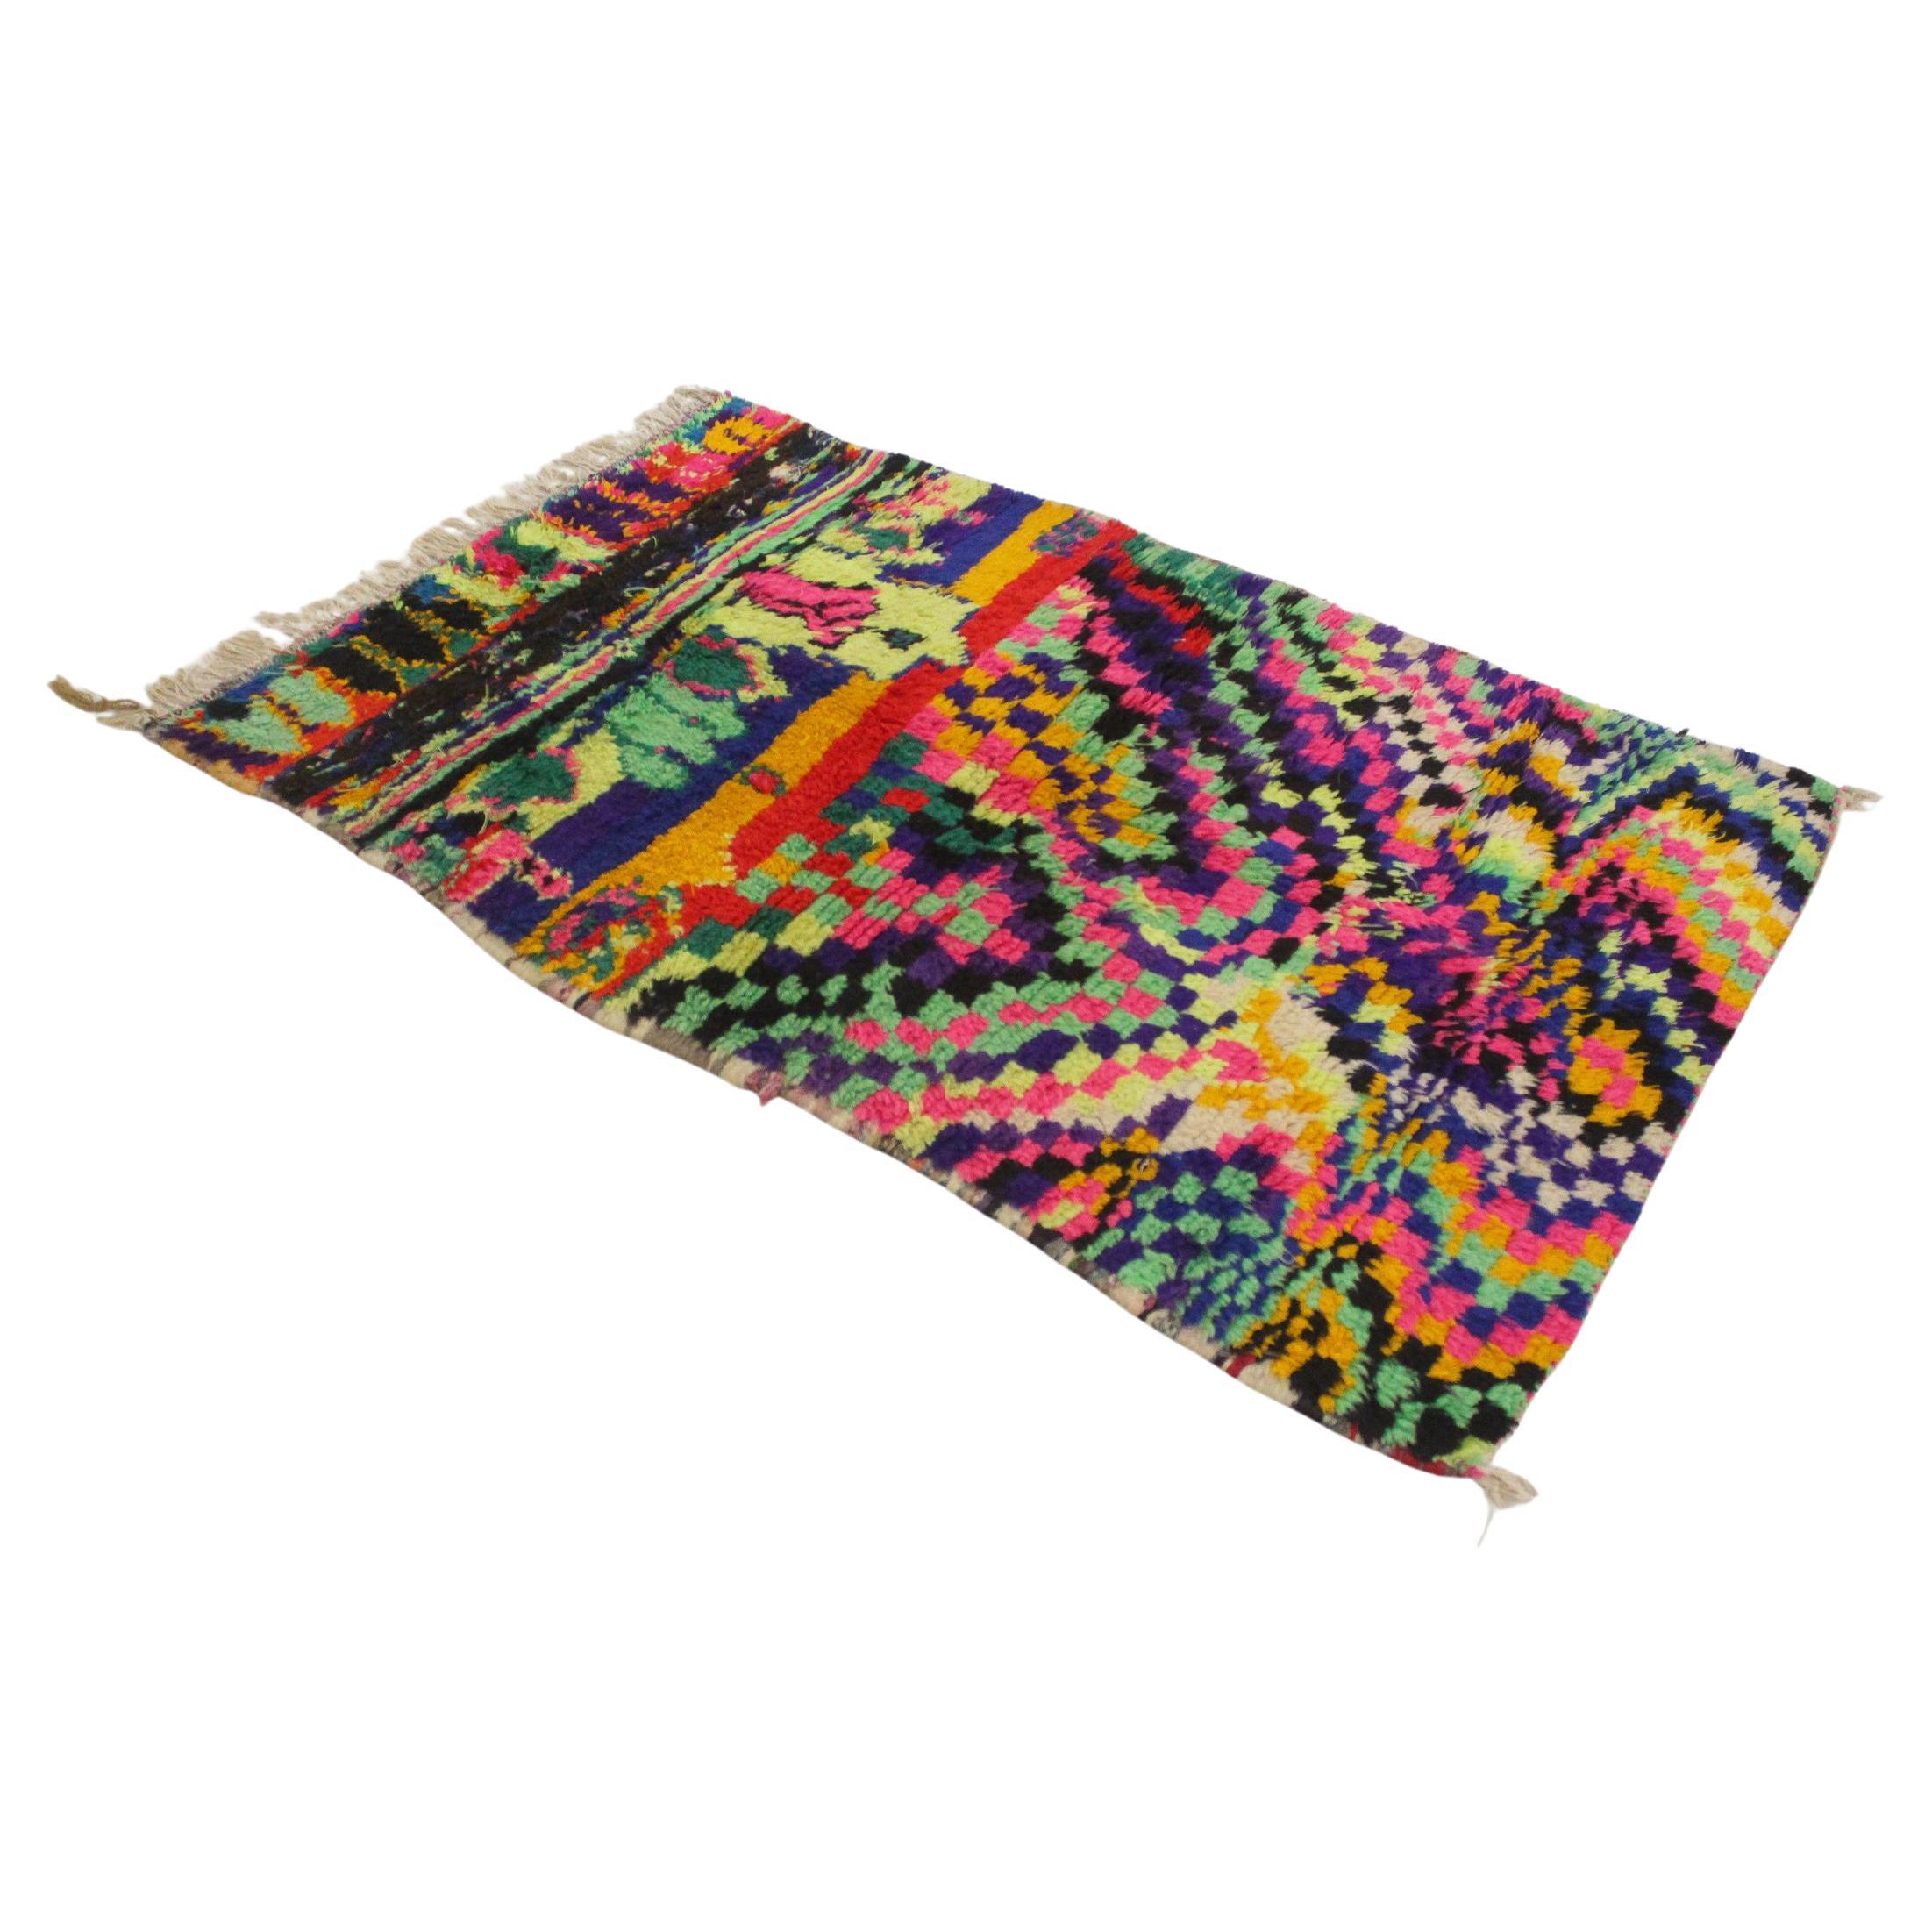 Marokkanischer Azilal-Teppich im Vintage-Stil - Neonfarben - 3.1x4.6feet / 96x141cm